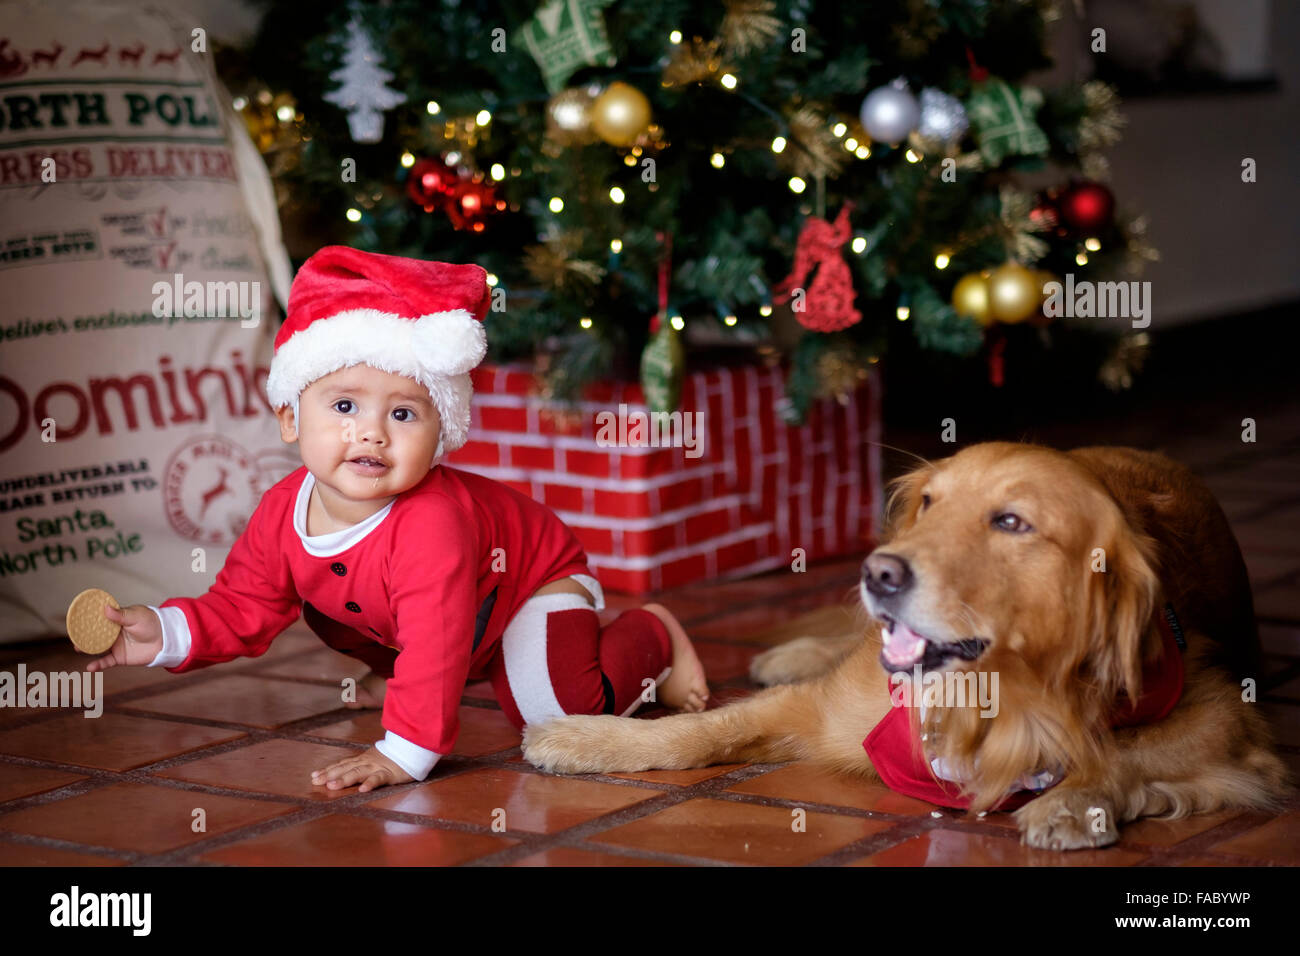 Niedliche Baby Kind in Elf Weihnachtskostüm kriechen neben Golden Retriever Familienhund am Weihnachtsbaum Stockfoto